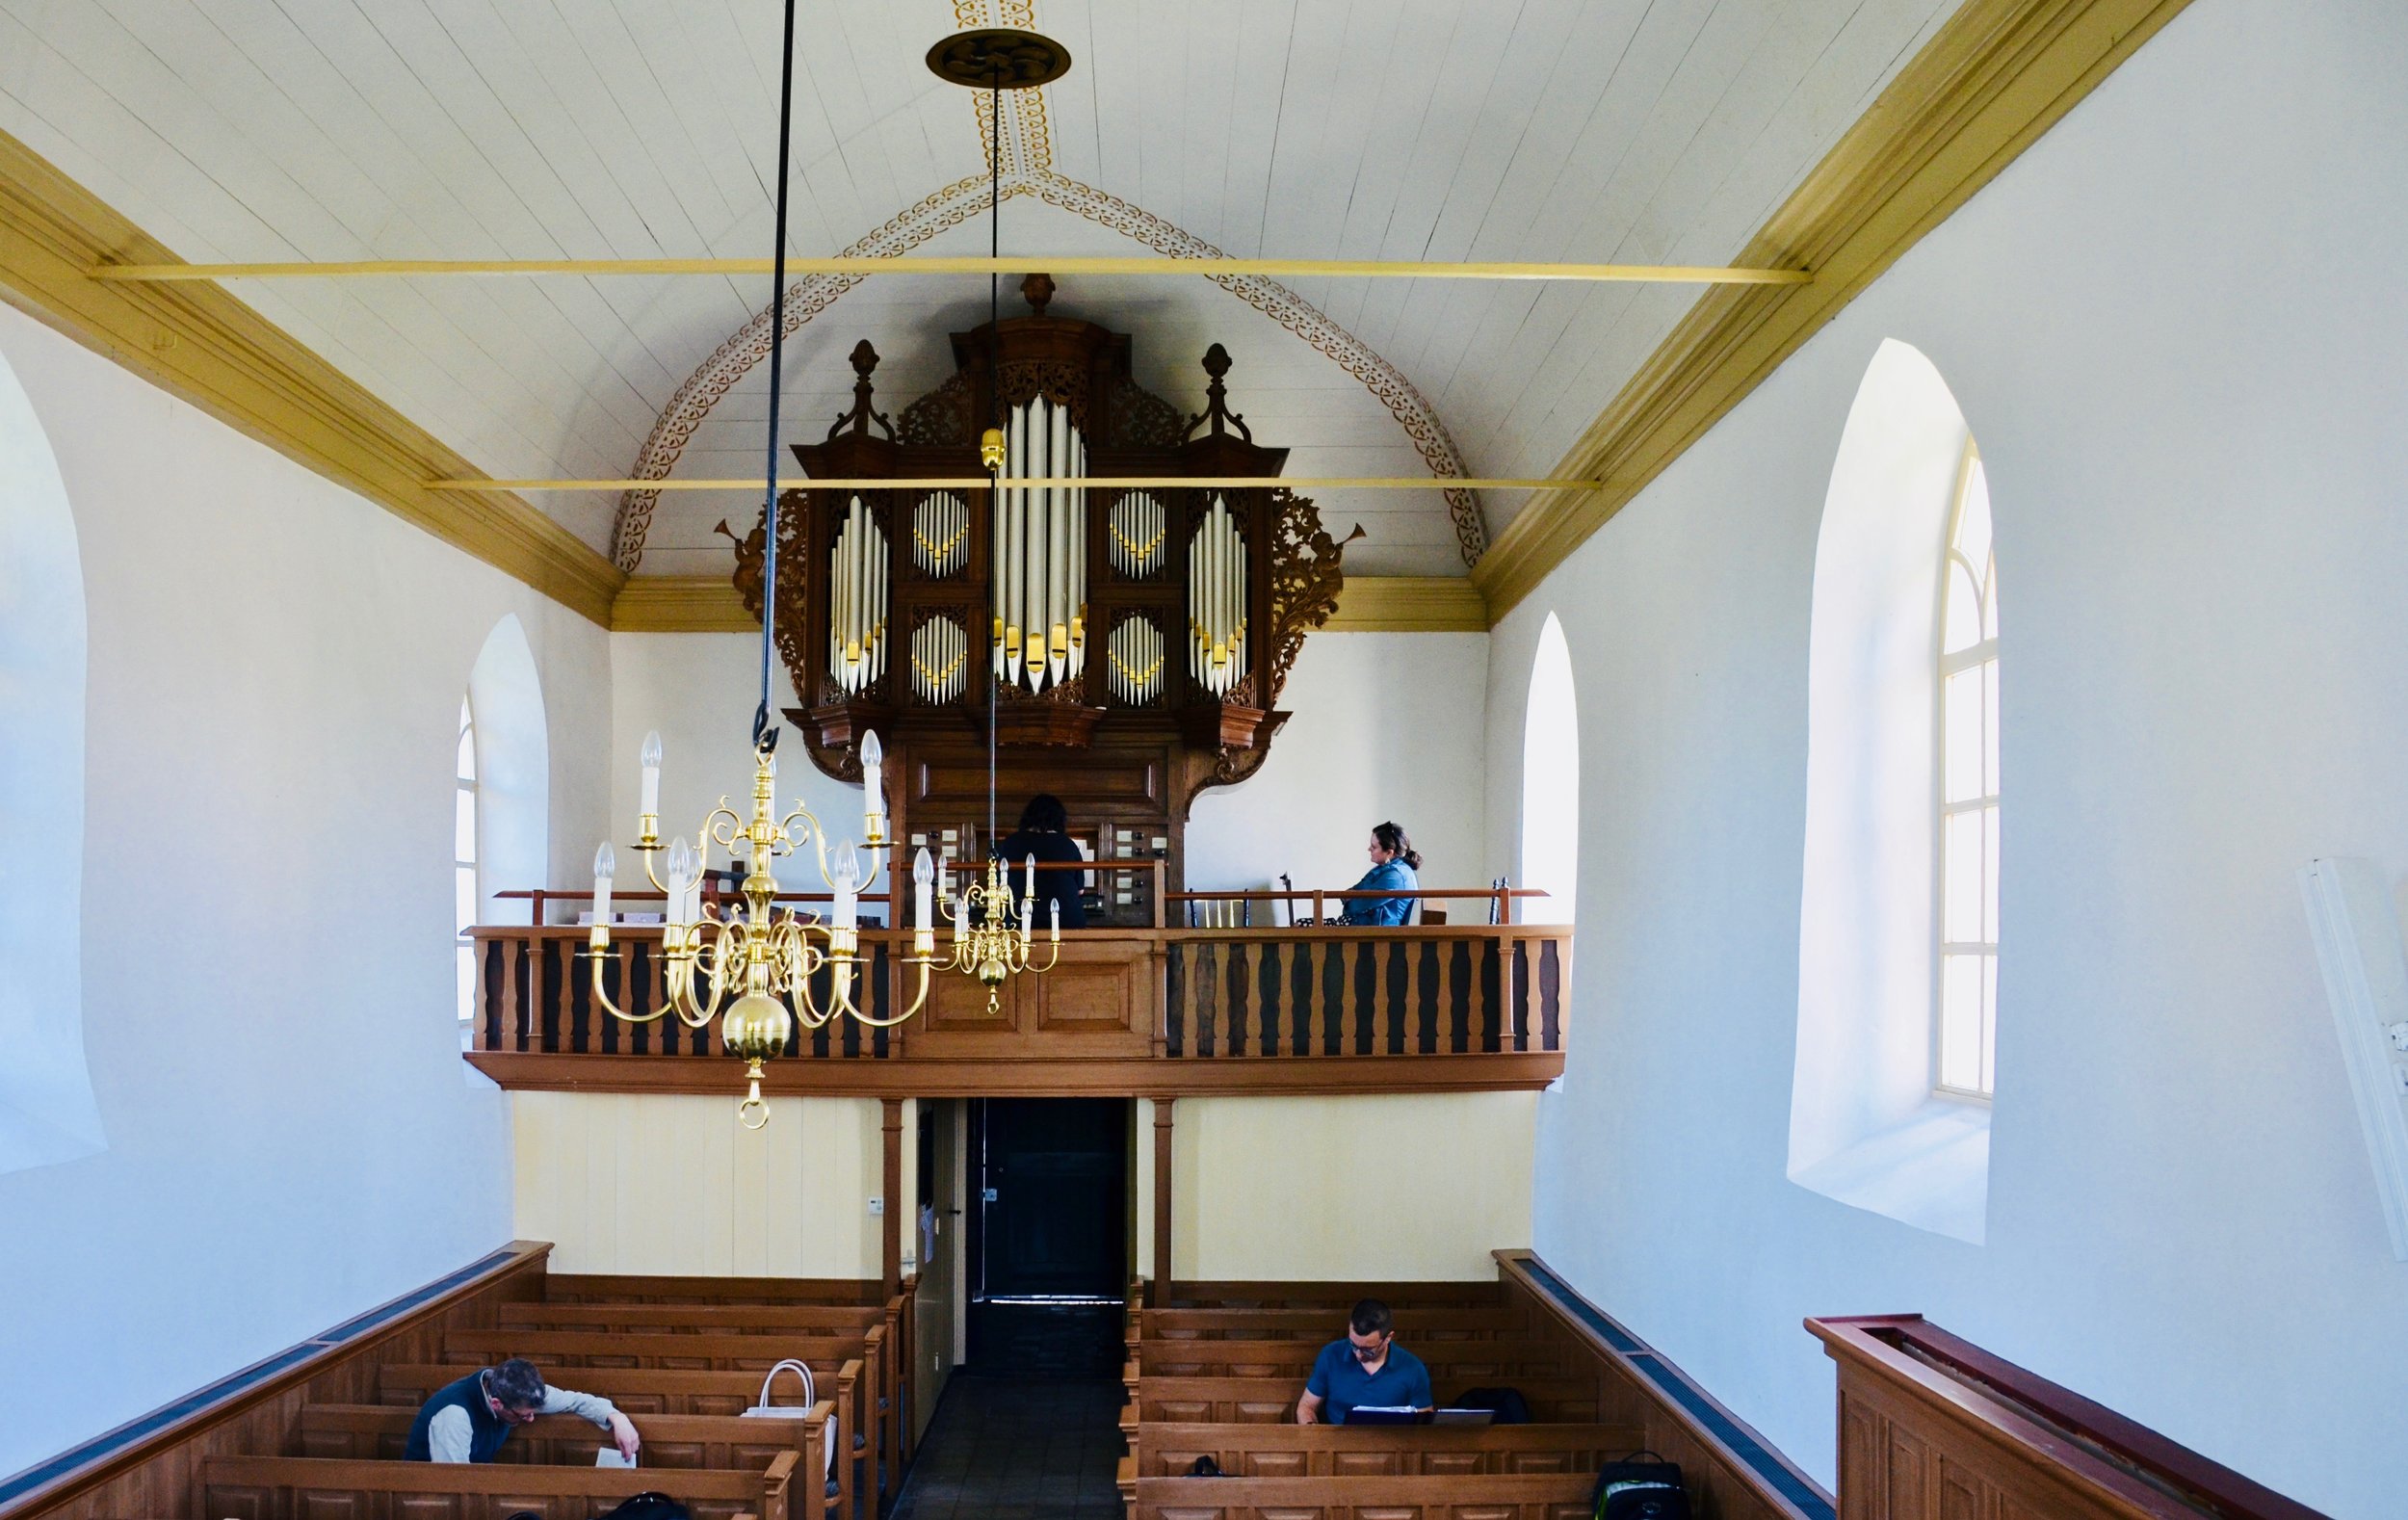  Schnitger organ, Michaëlkerk, Mensingeweer, Holland. 